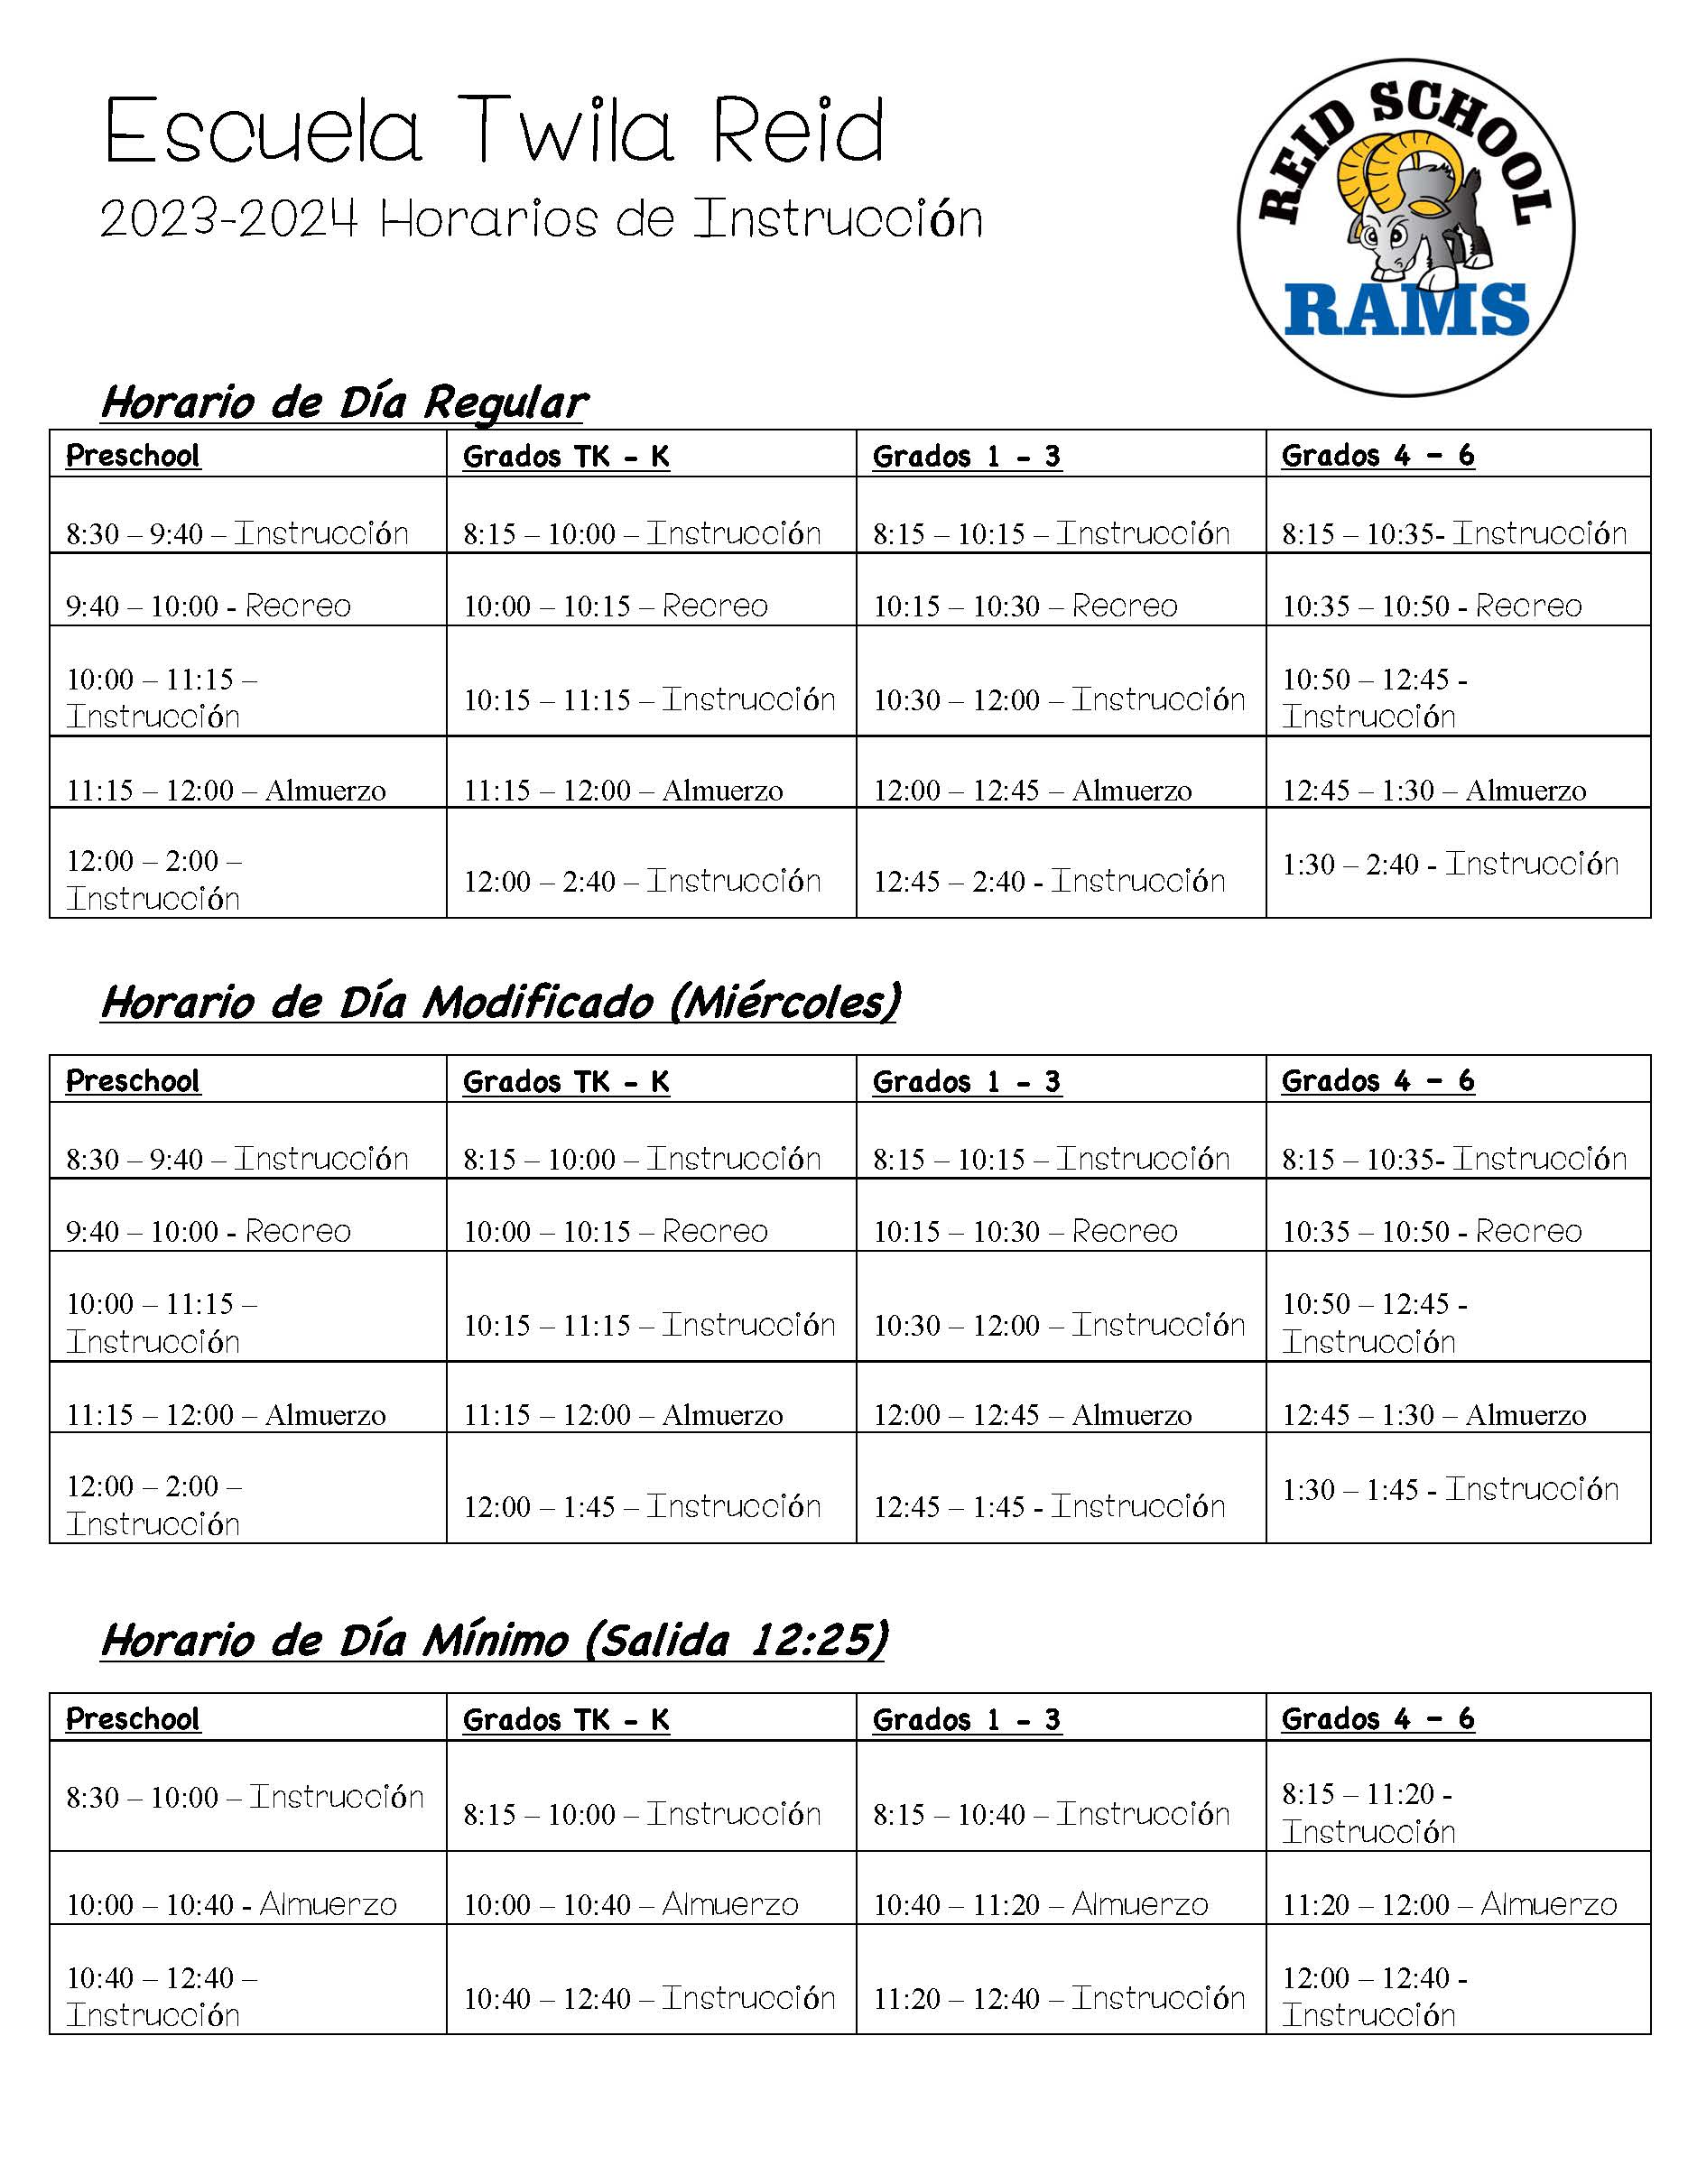 Reid Spanish School Schedule 2022-23